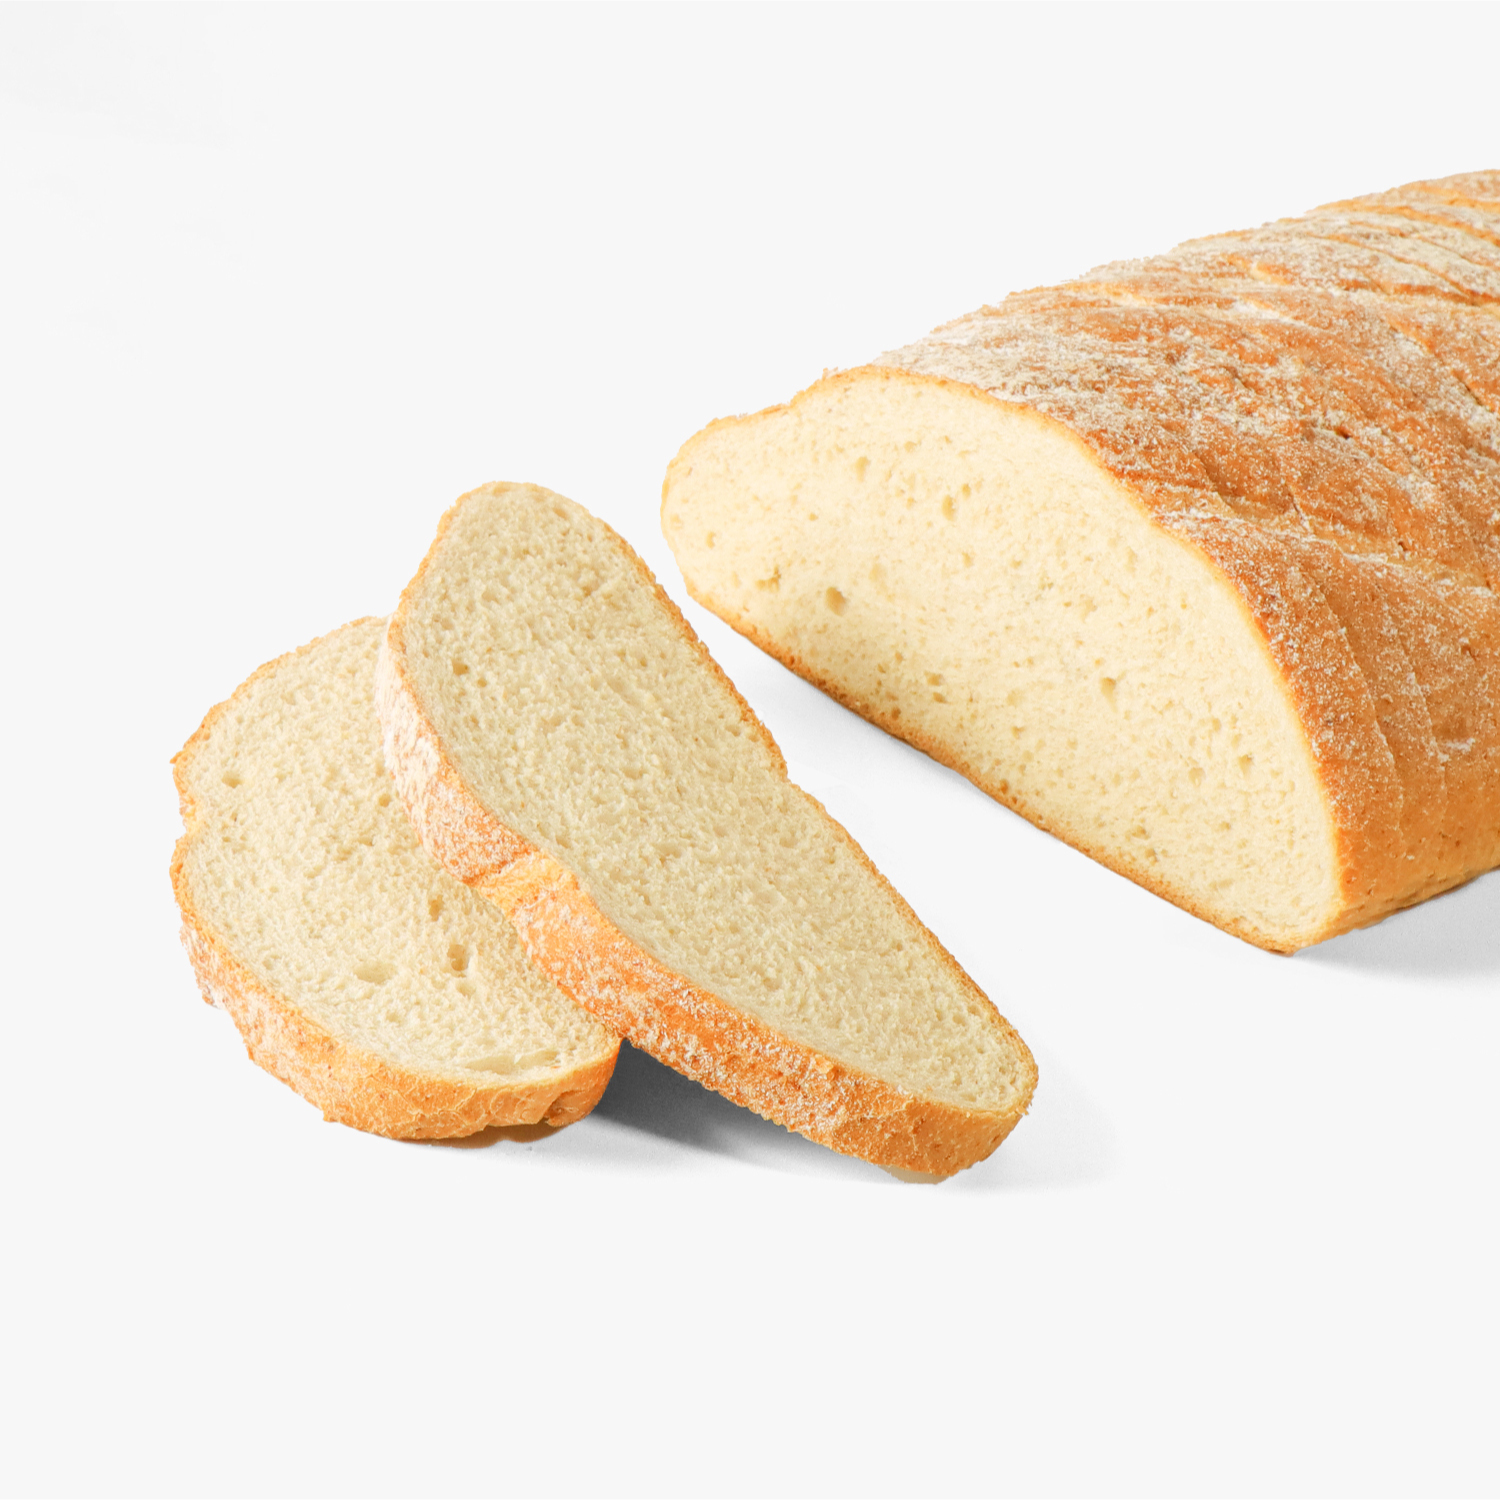 ขนมปังเเช่แข็ง : SYNOVA ขนมปังซาว์โดว์ (กล่อง)